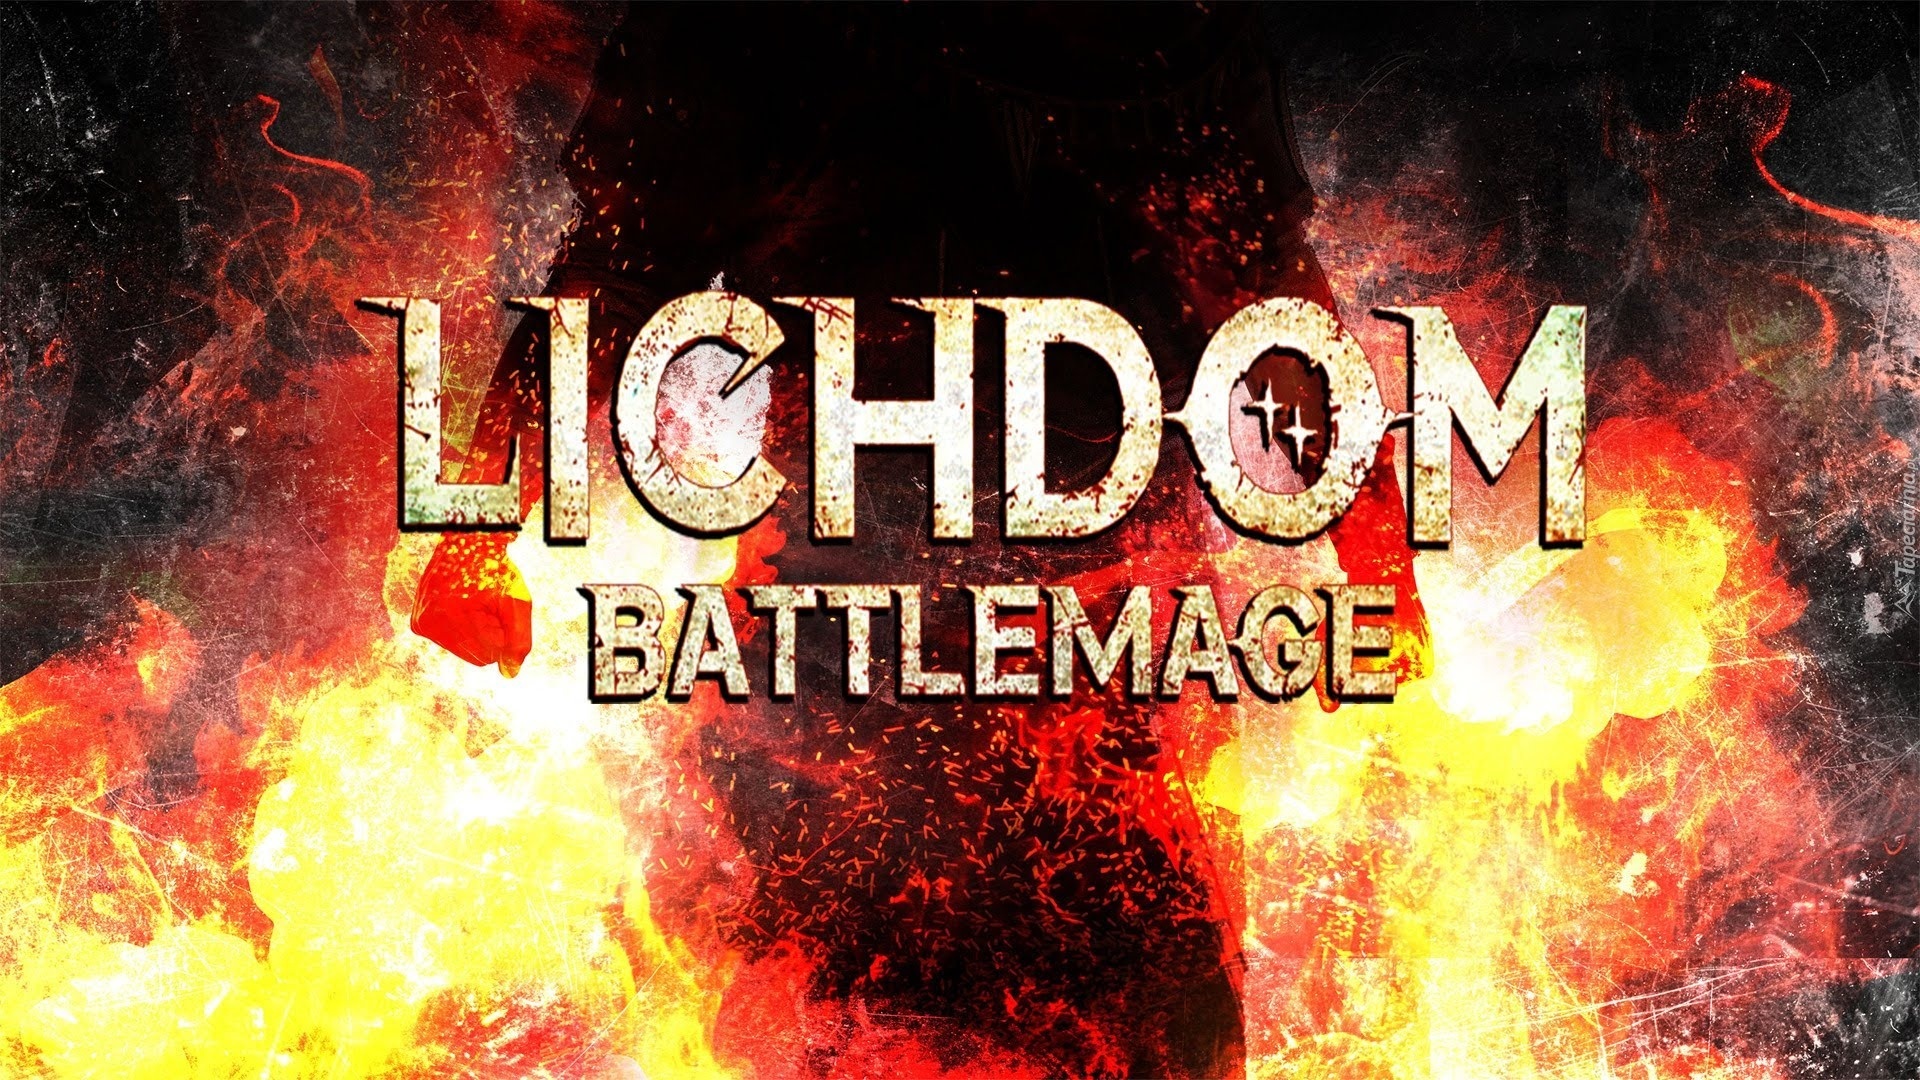 lichdom battlemage pc download